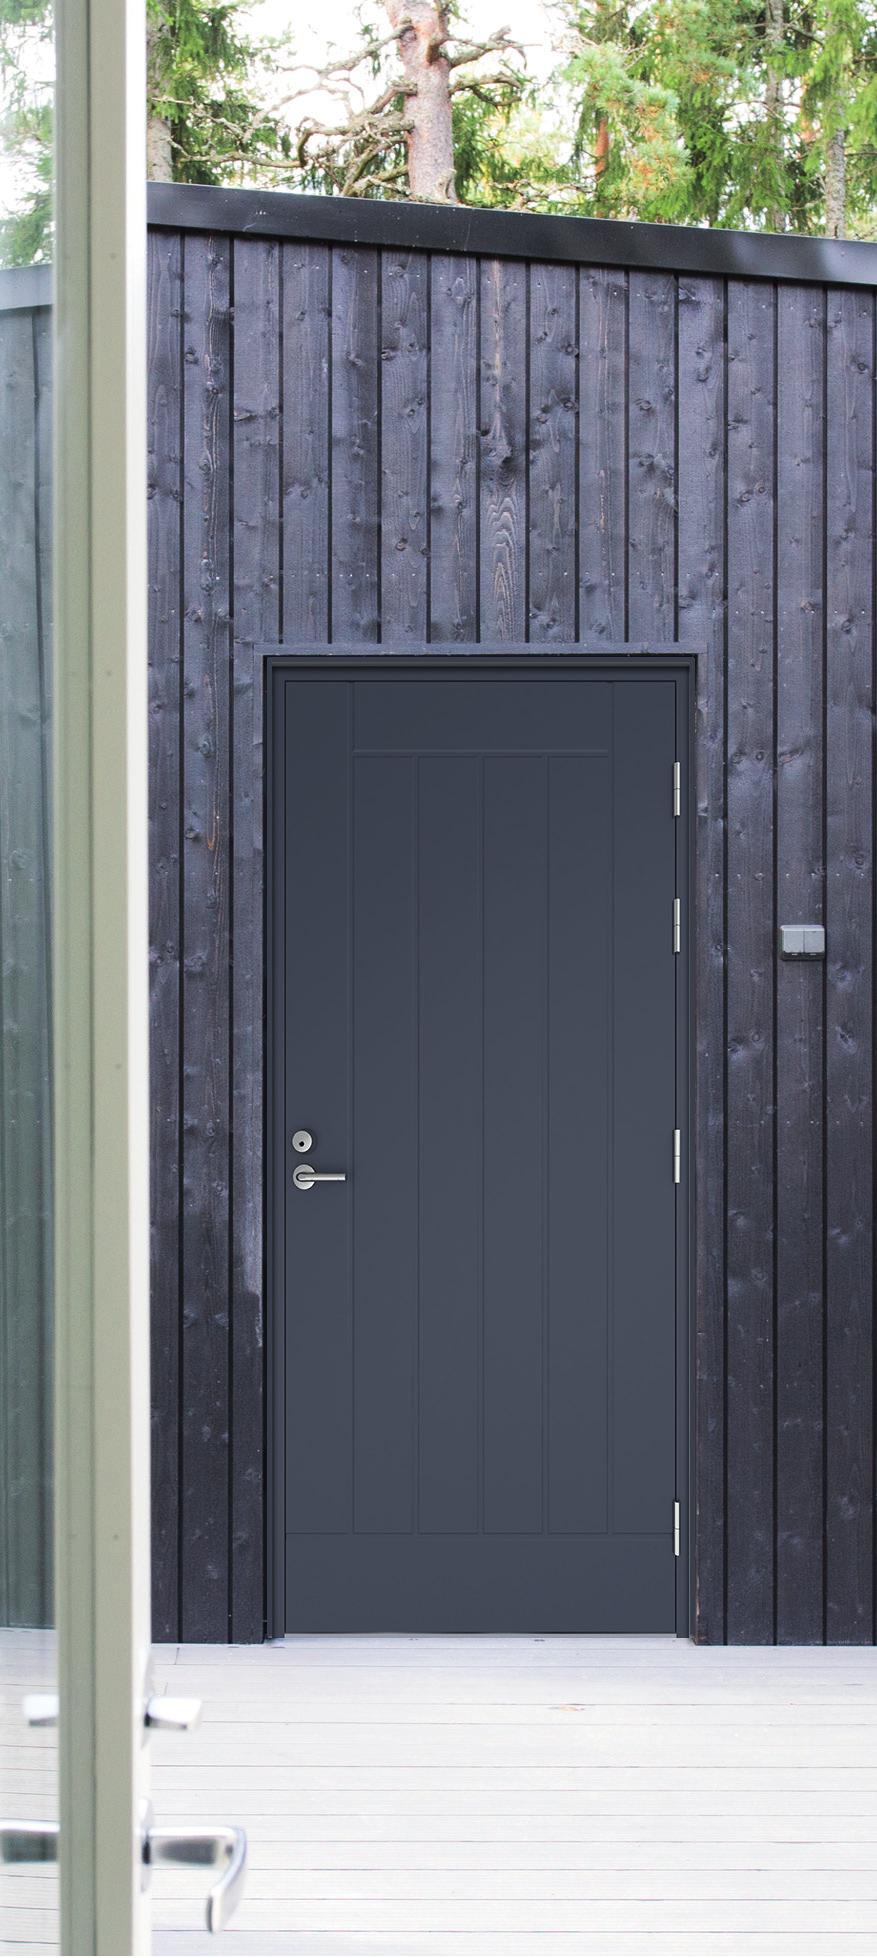 Tee kestävä valinta Fenestra -ovet Laadukkaat Fenestra-ovet tarjoavat pitkäikäisen, tiiviin ja luotettavan ratkaisun joka kotiin. Ovet on jäykistetty alumiinilevyllä sekä HDF-pinnalla.